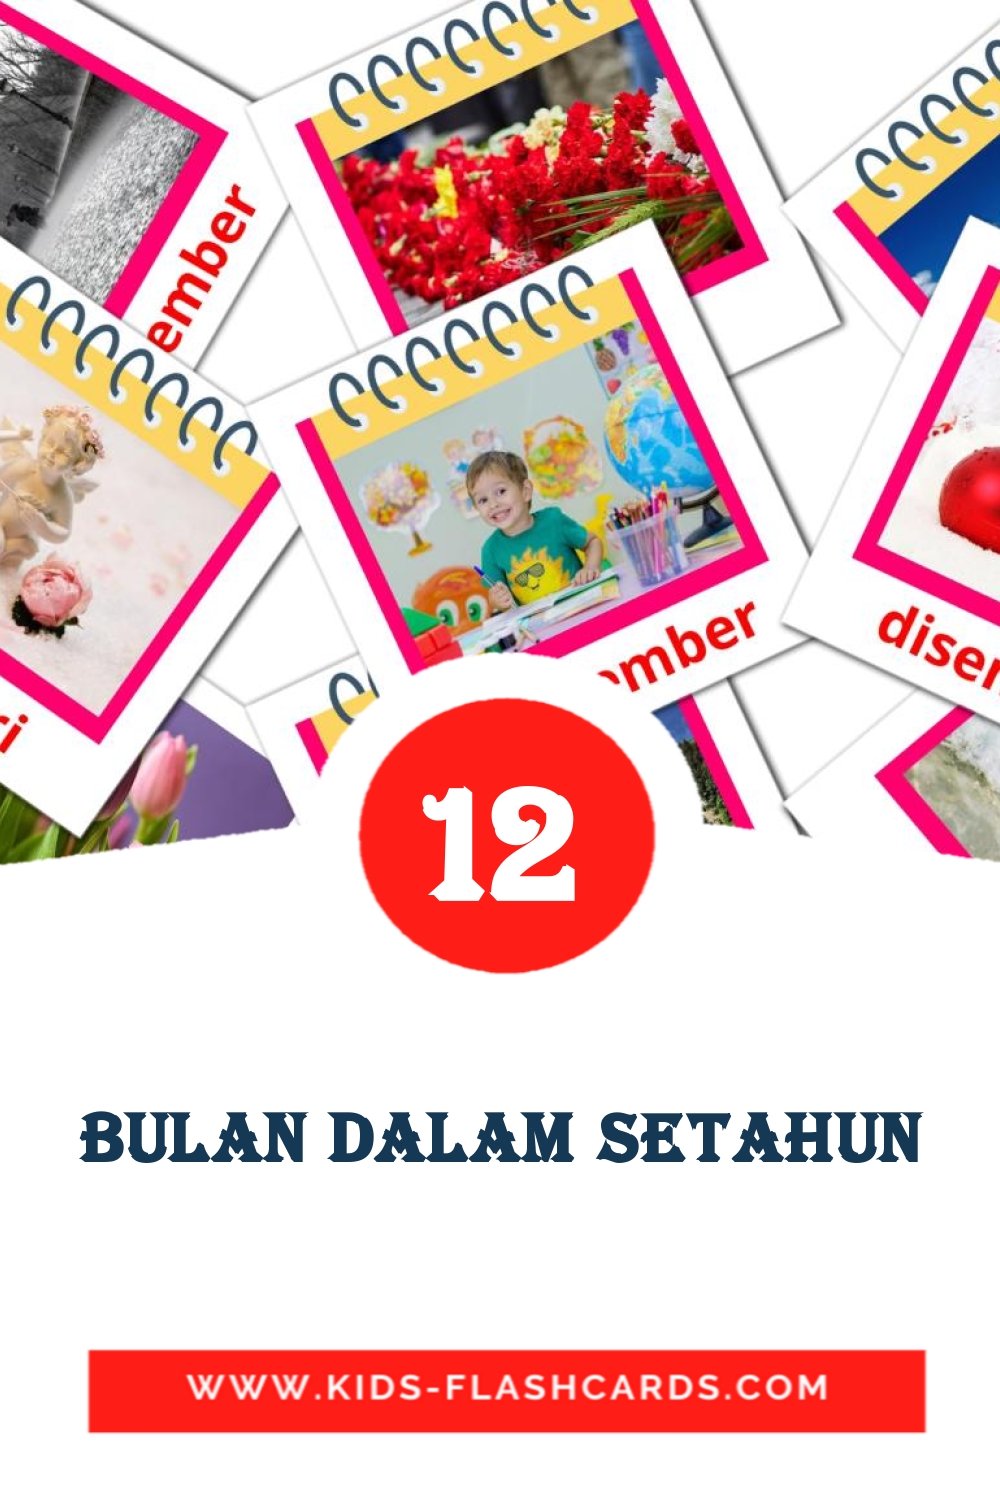 Bulan Dalam Setahun на малайском для Детского Сада (12 карточек)